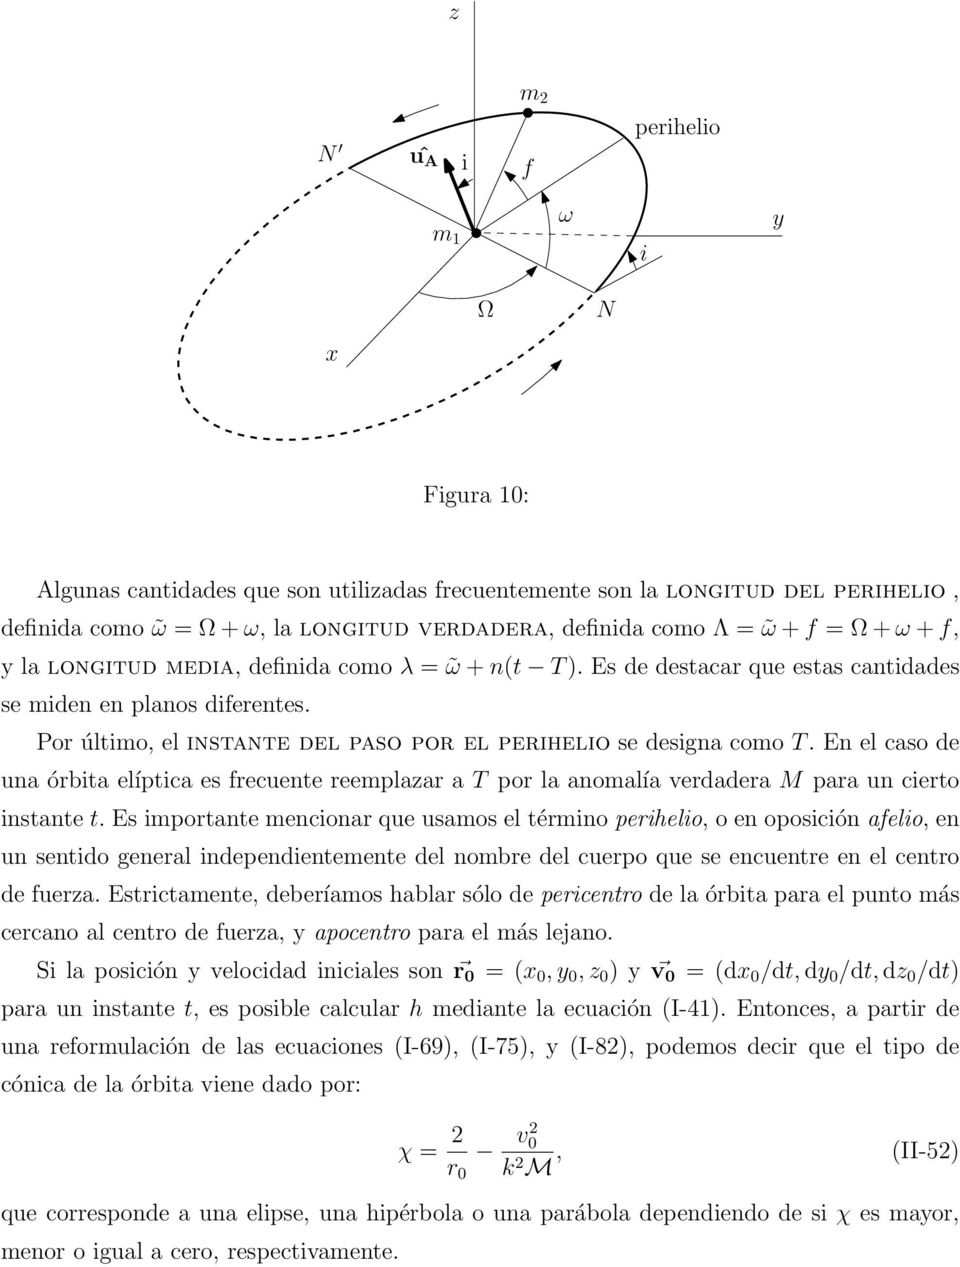 En el caso de una órbita elíptica es frecuente reemplazar a T por la anomalía verdadera M para un cierto instante t.